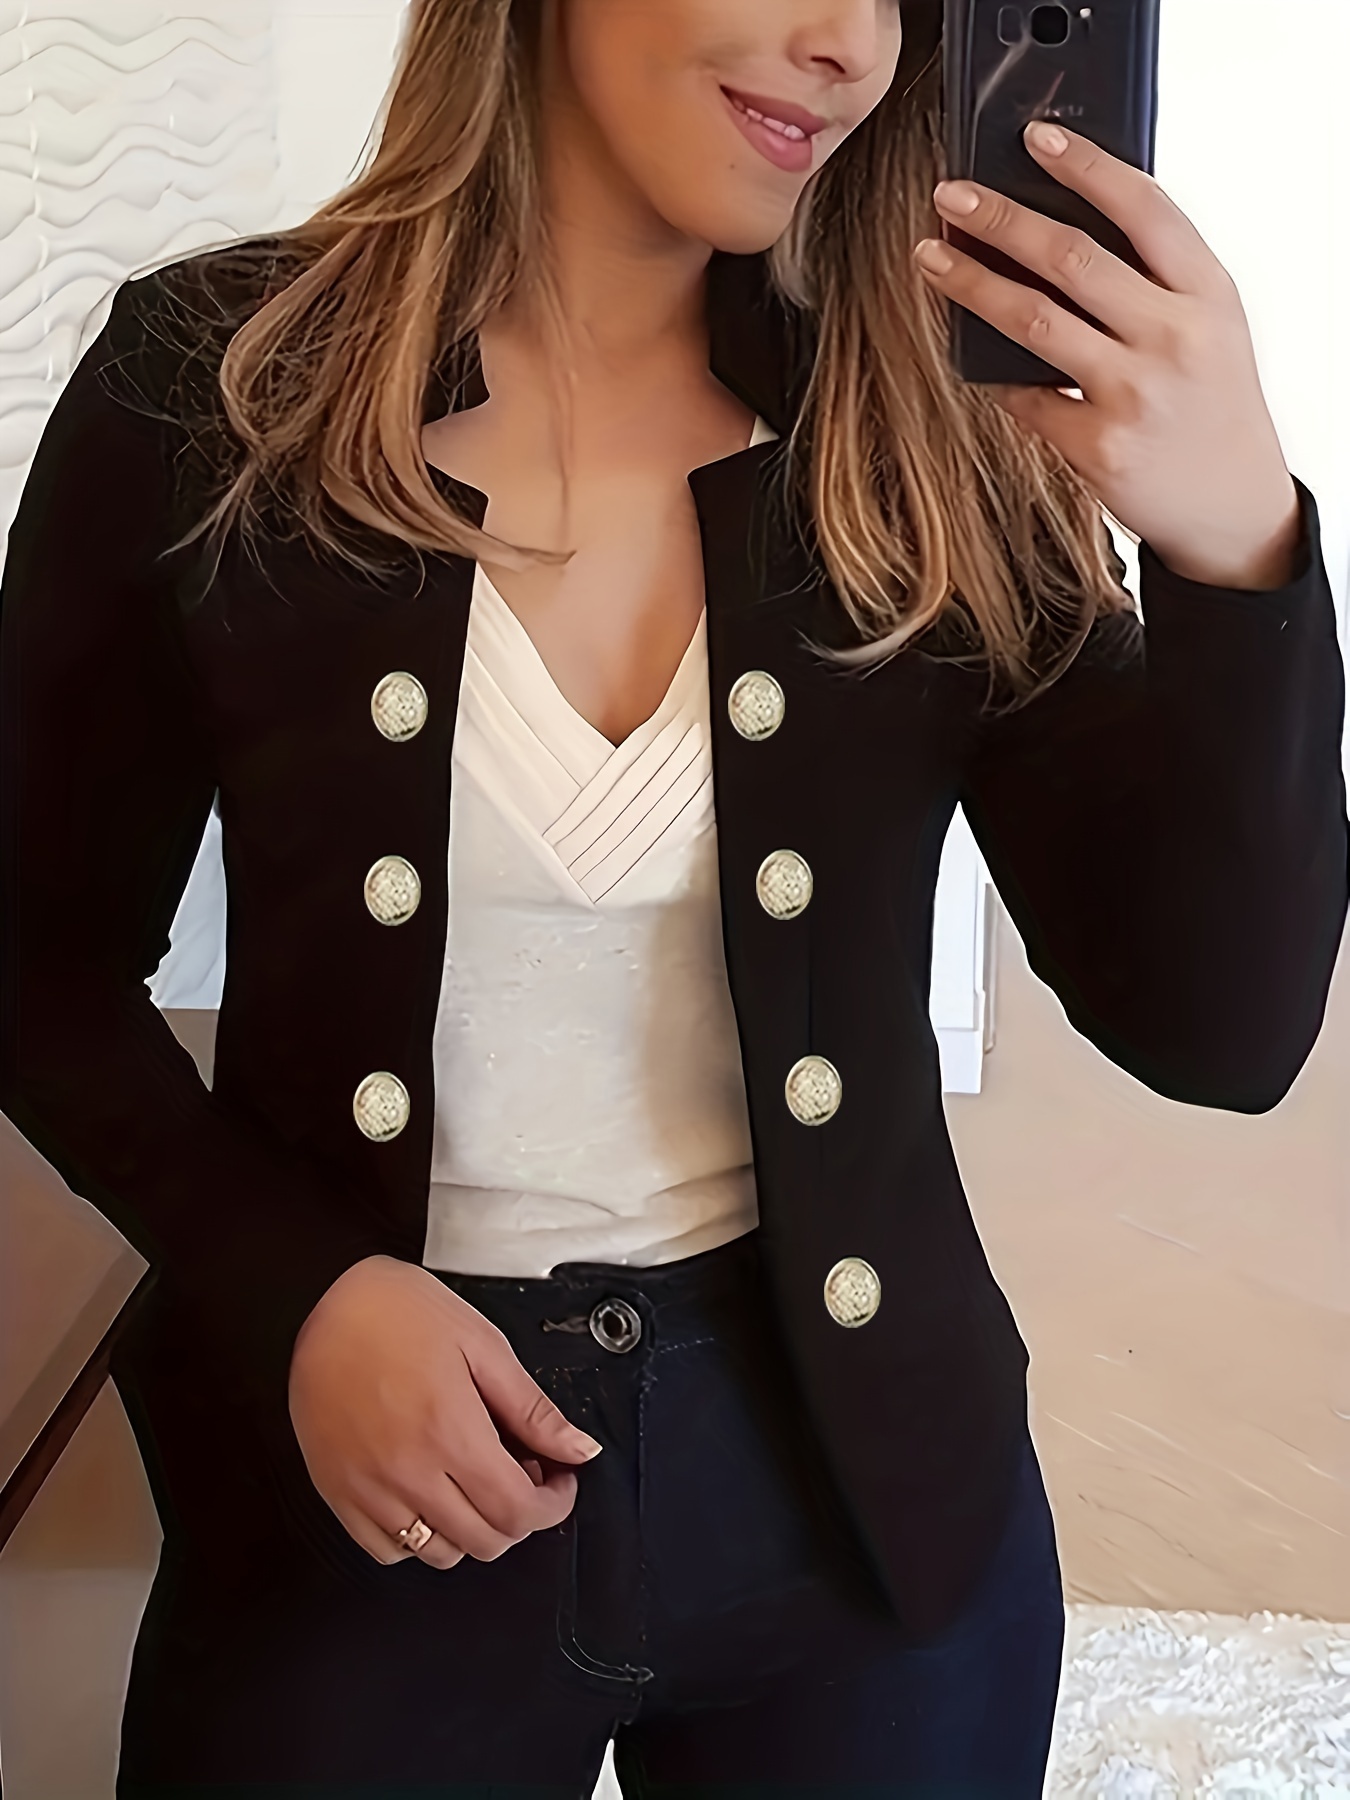 Coat Buttons For Women - Temu